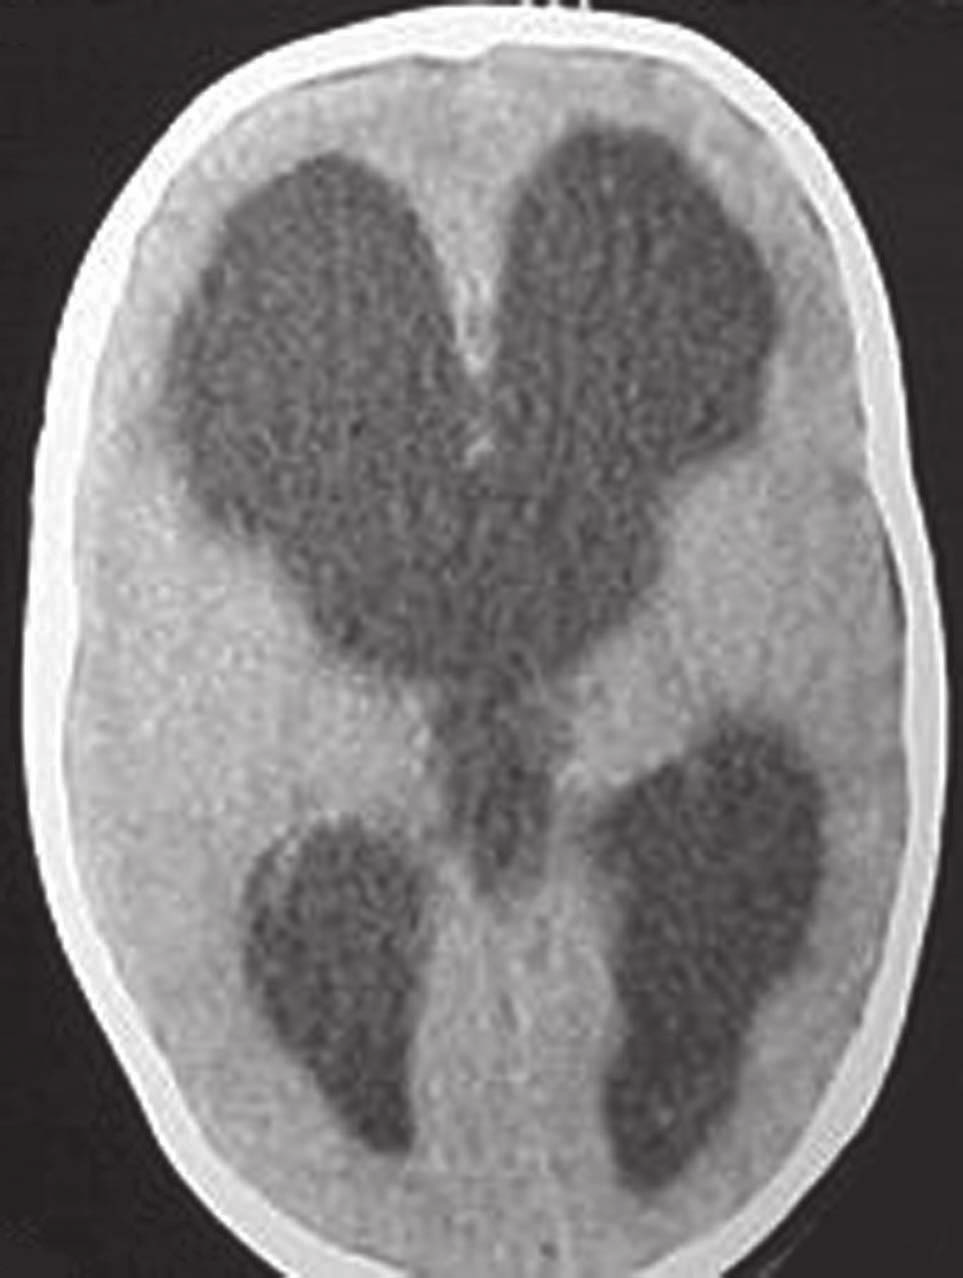 Șekil 3. Hidrosefalili bir olgunun bilgisayarlı beyin tomografisinde lateral ve üçüncü ventriküllerdeki dilatasyon izlenmektedir.